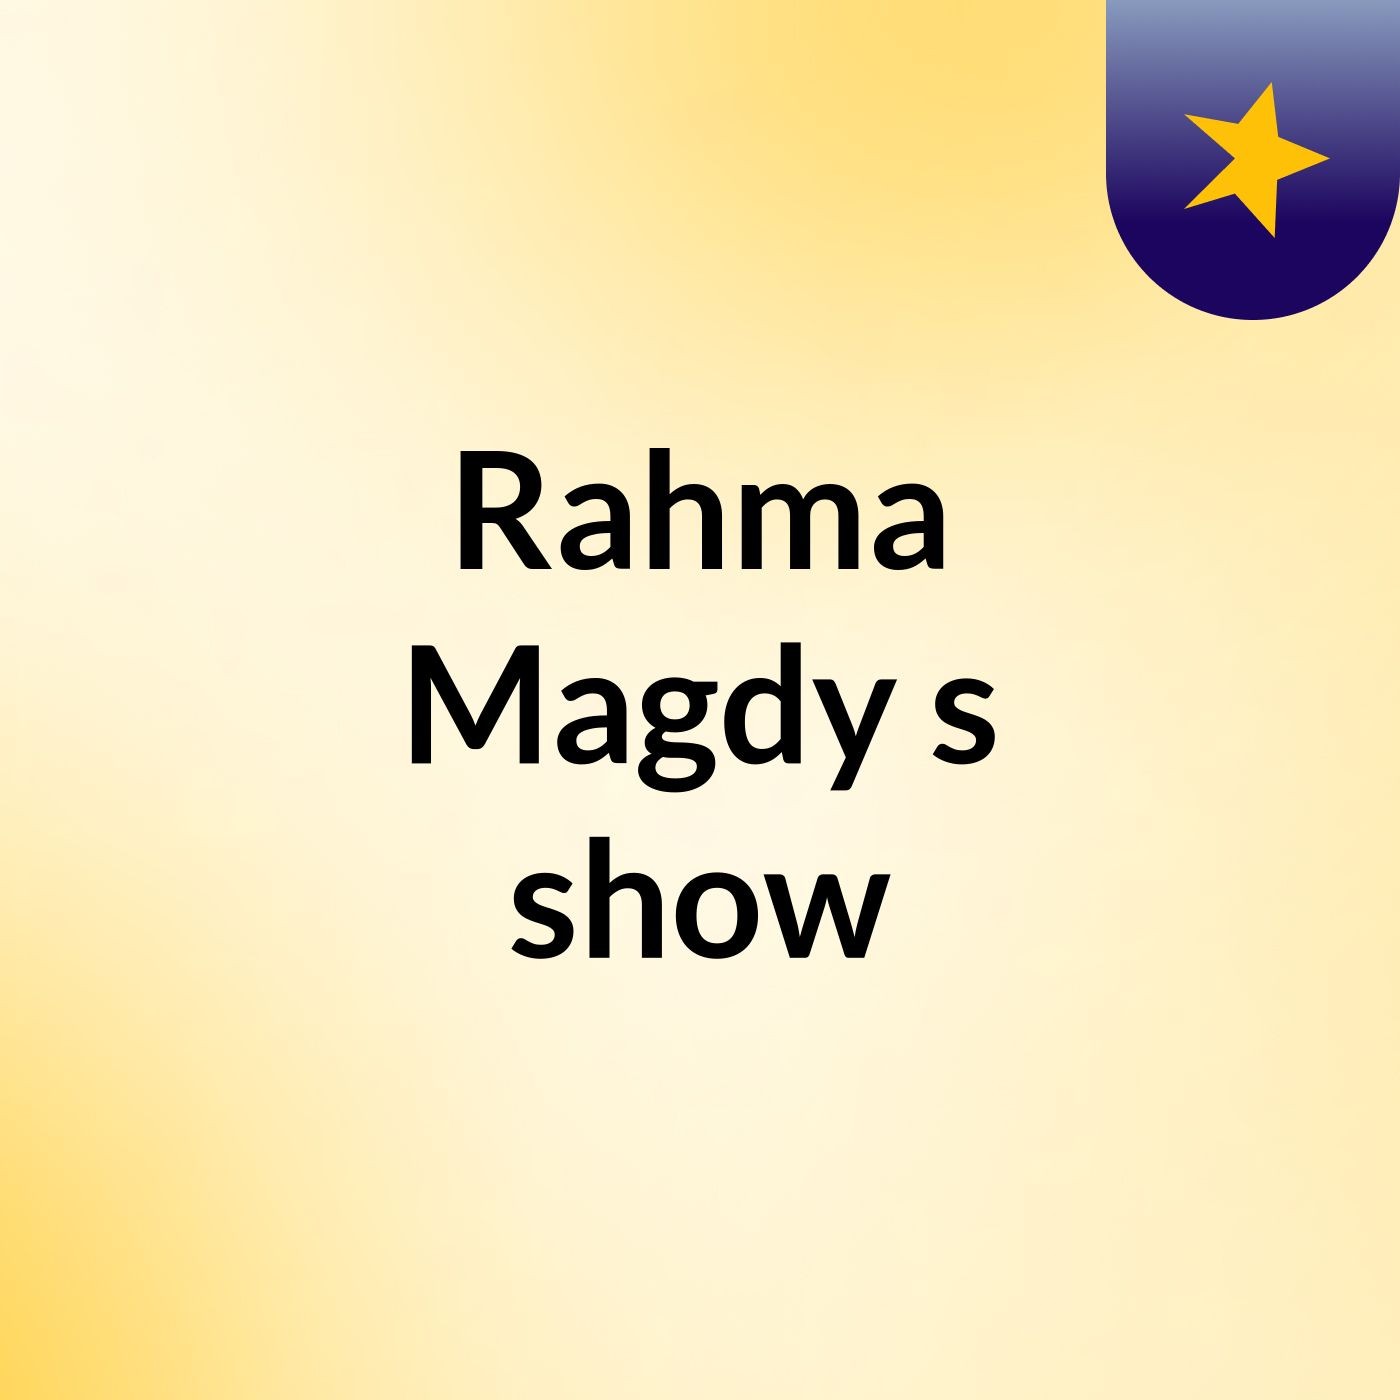 Rahma Magdy's show